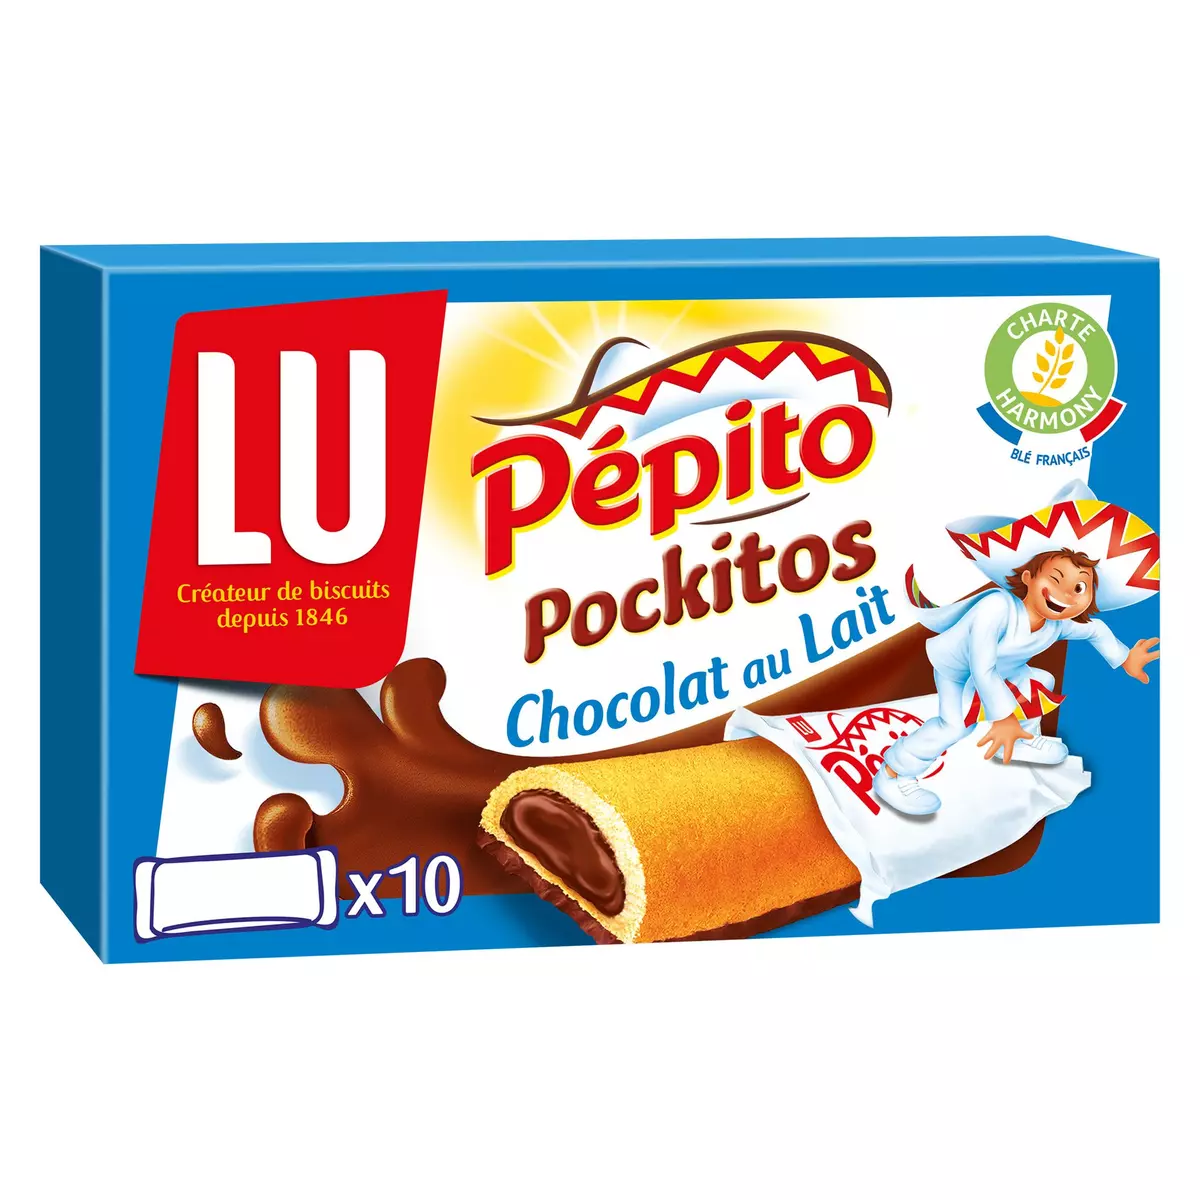 PEPITO Pockitos biscuits barre fourrés au chocolat au lait 10 biscuits 295g